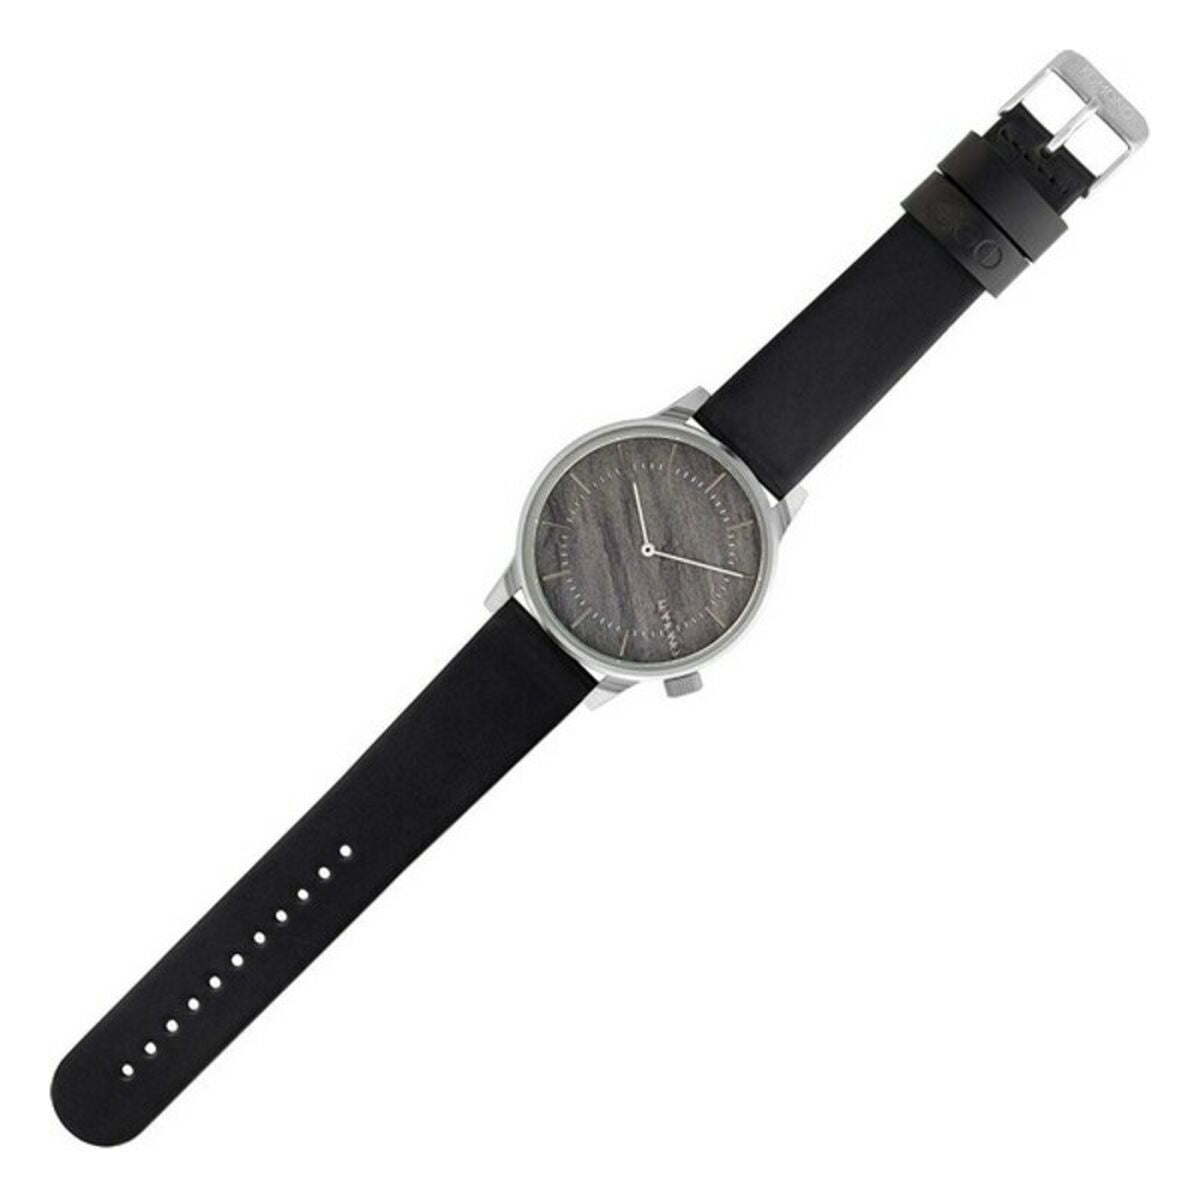 Horloge Heren Komono KOM-W3015 (Ø 41 mm)